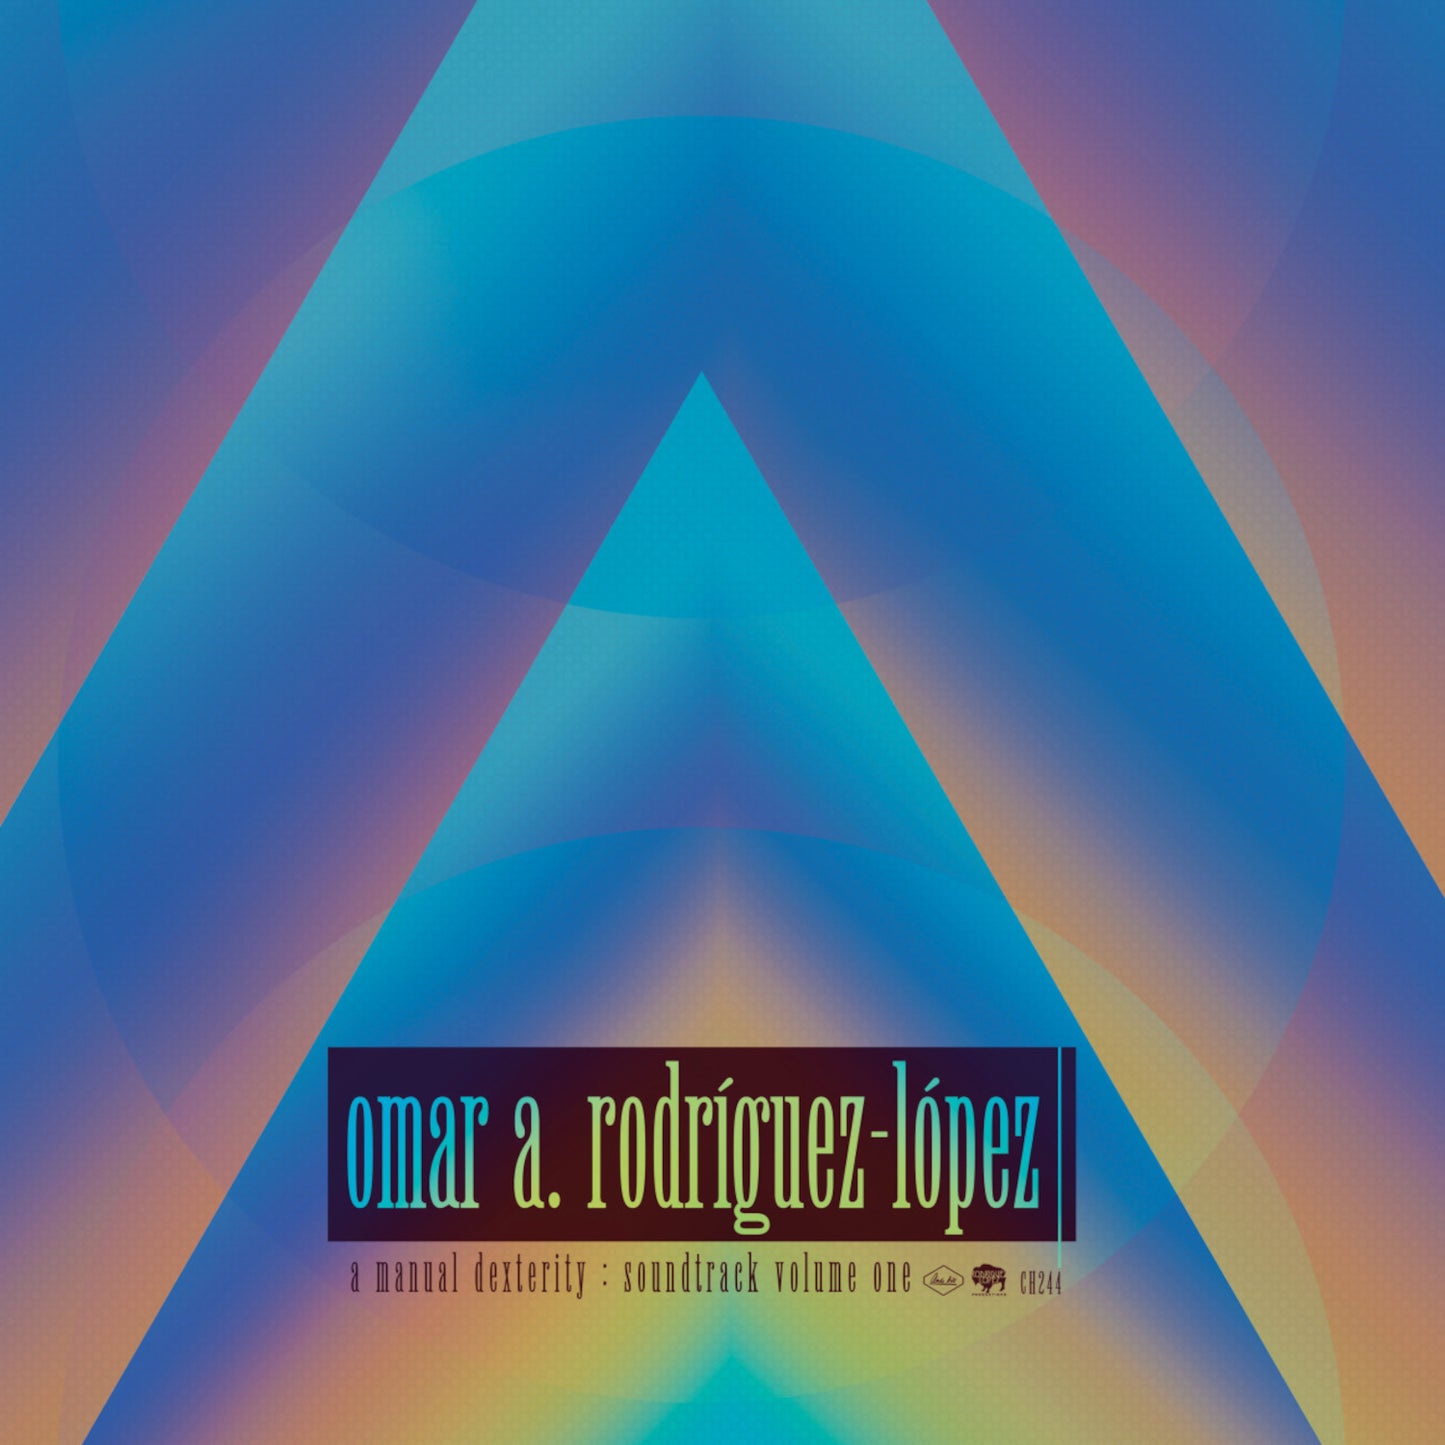 Omar Rodríguez-López - A Manual Dexterity: Soundtrack Volume One - 2LP